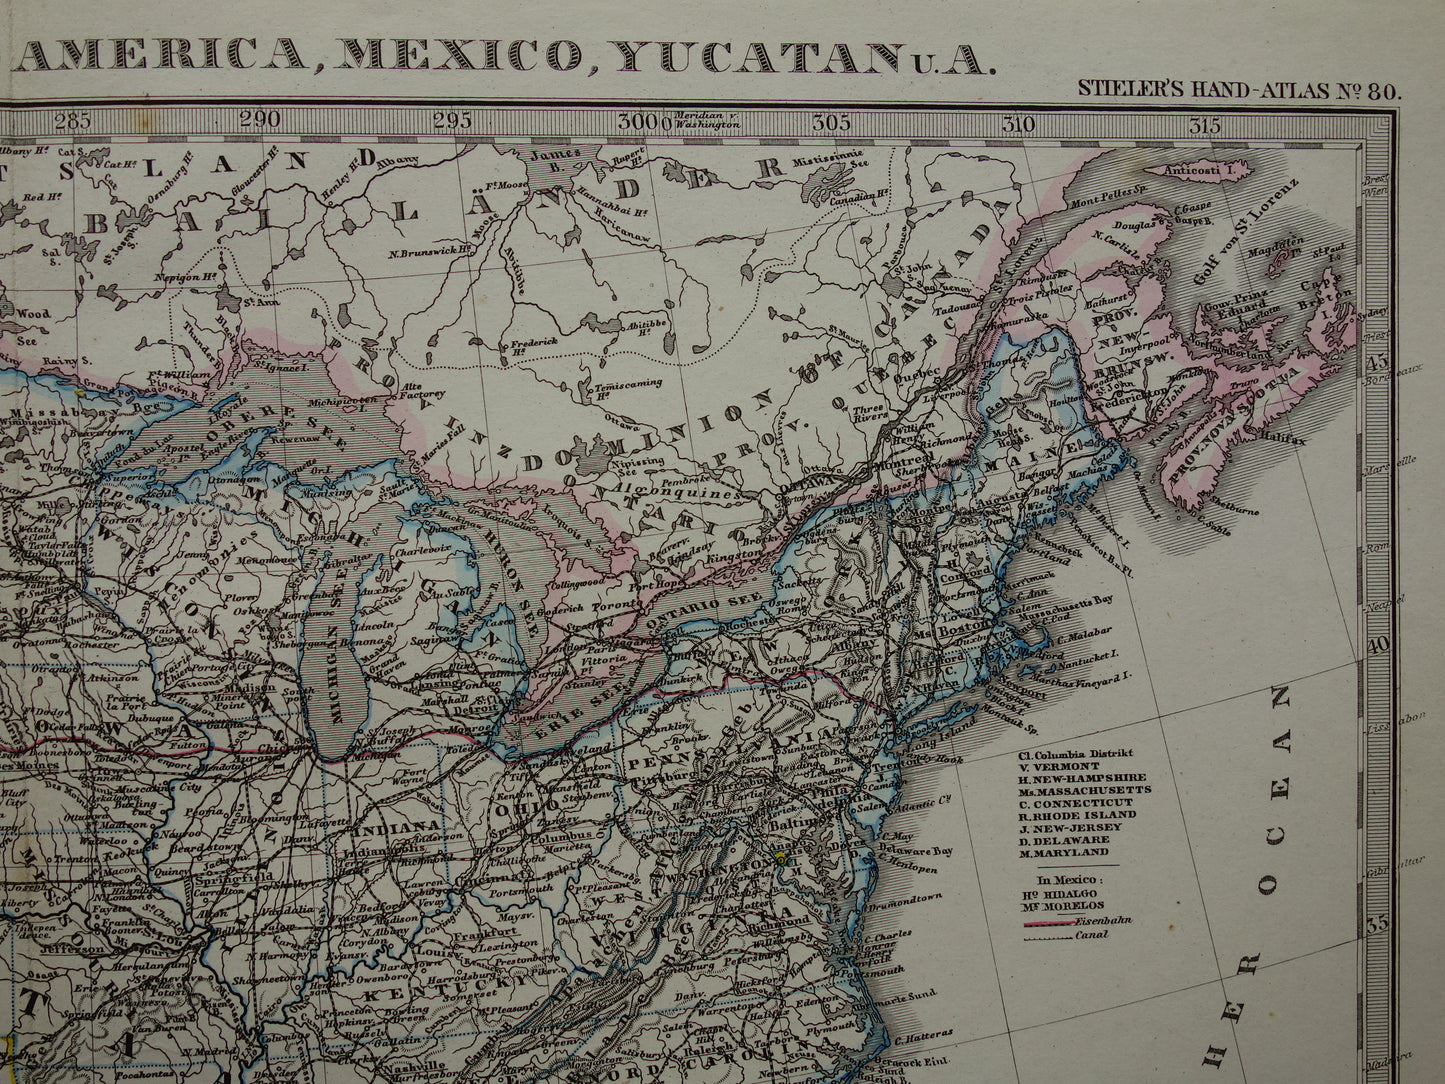 VERENIGDE STATEN oude kaart van de VS in 1878 antieke landkaart van Amerika USA originele vintage historische kaarten